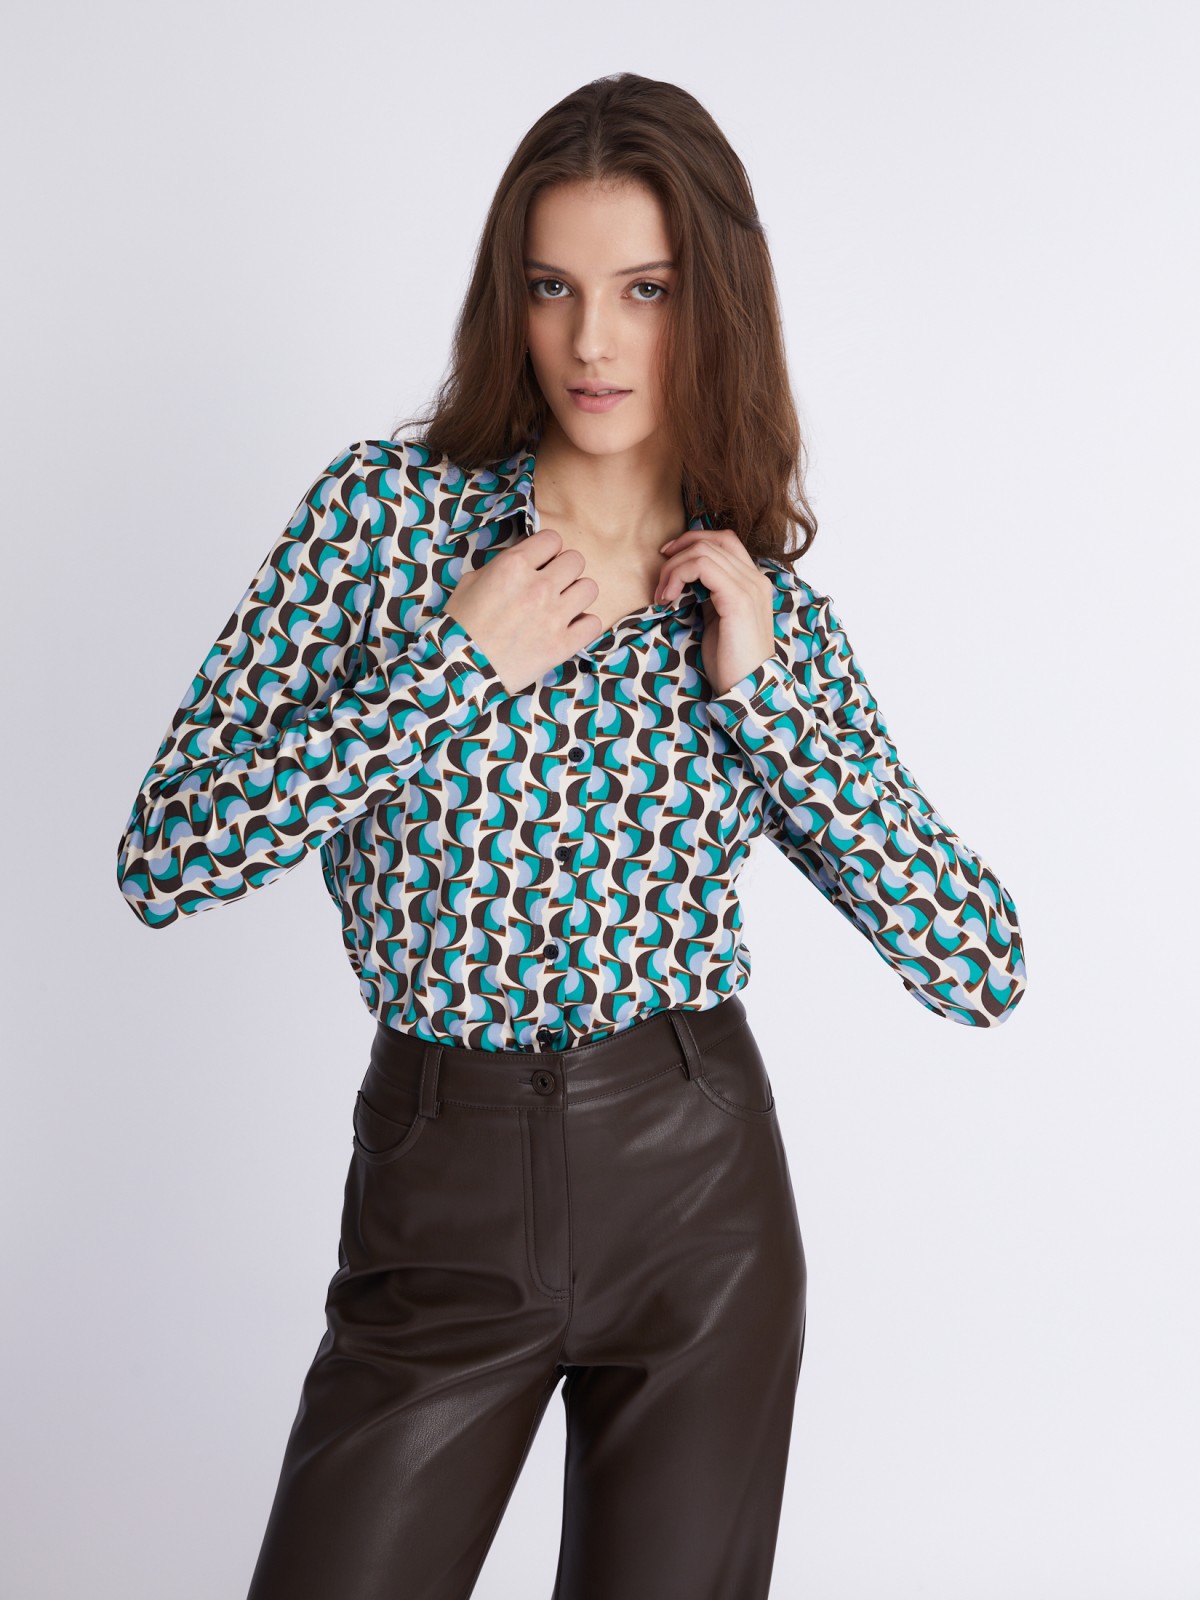 Трикотажная блузка-рубашка с абстрактным геометрическим принтом zolla 023321159233, цвет голубой, размер S - фото 3